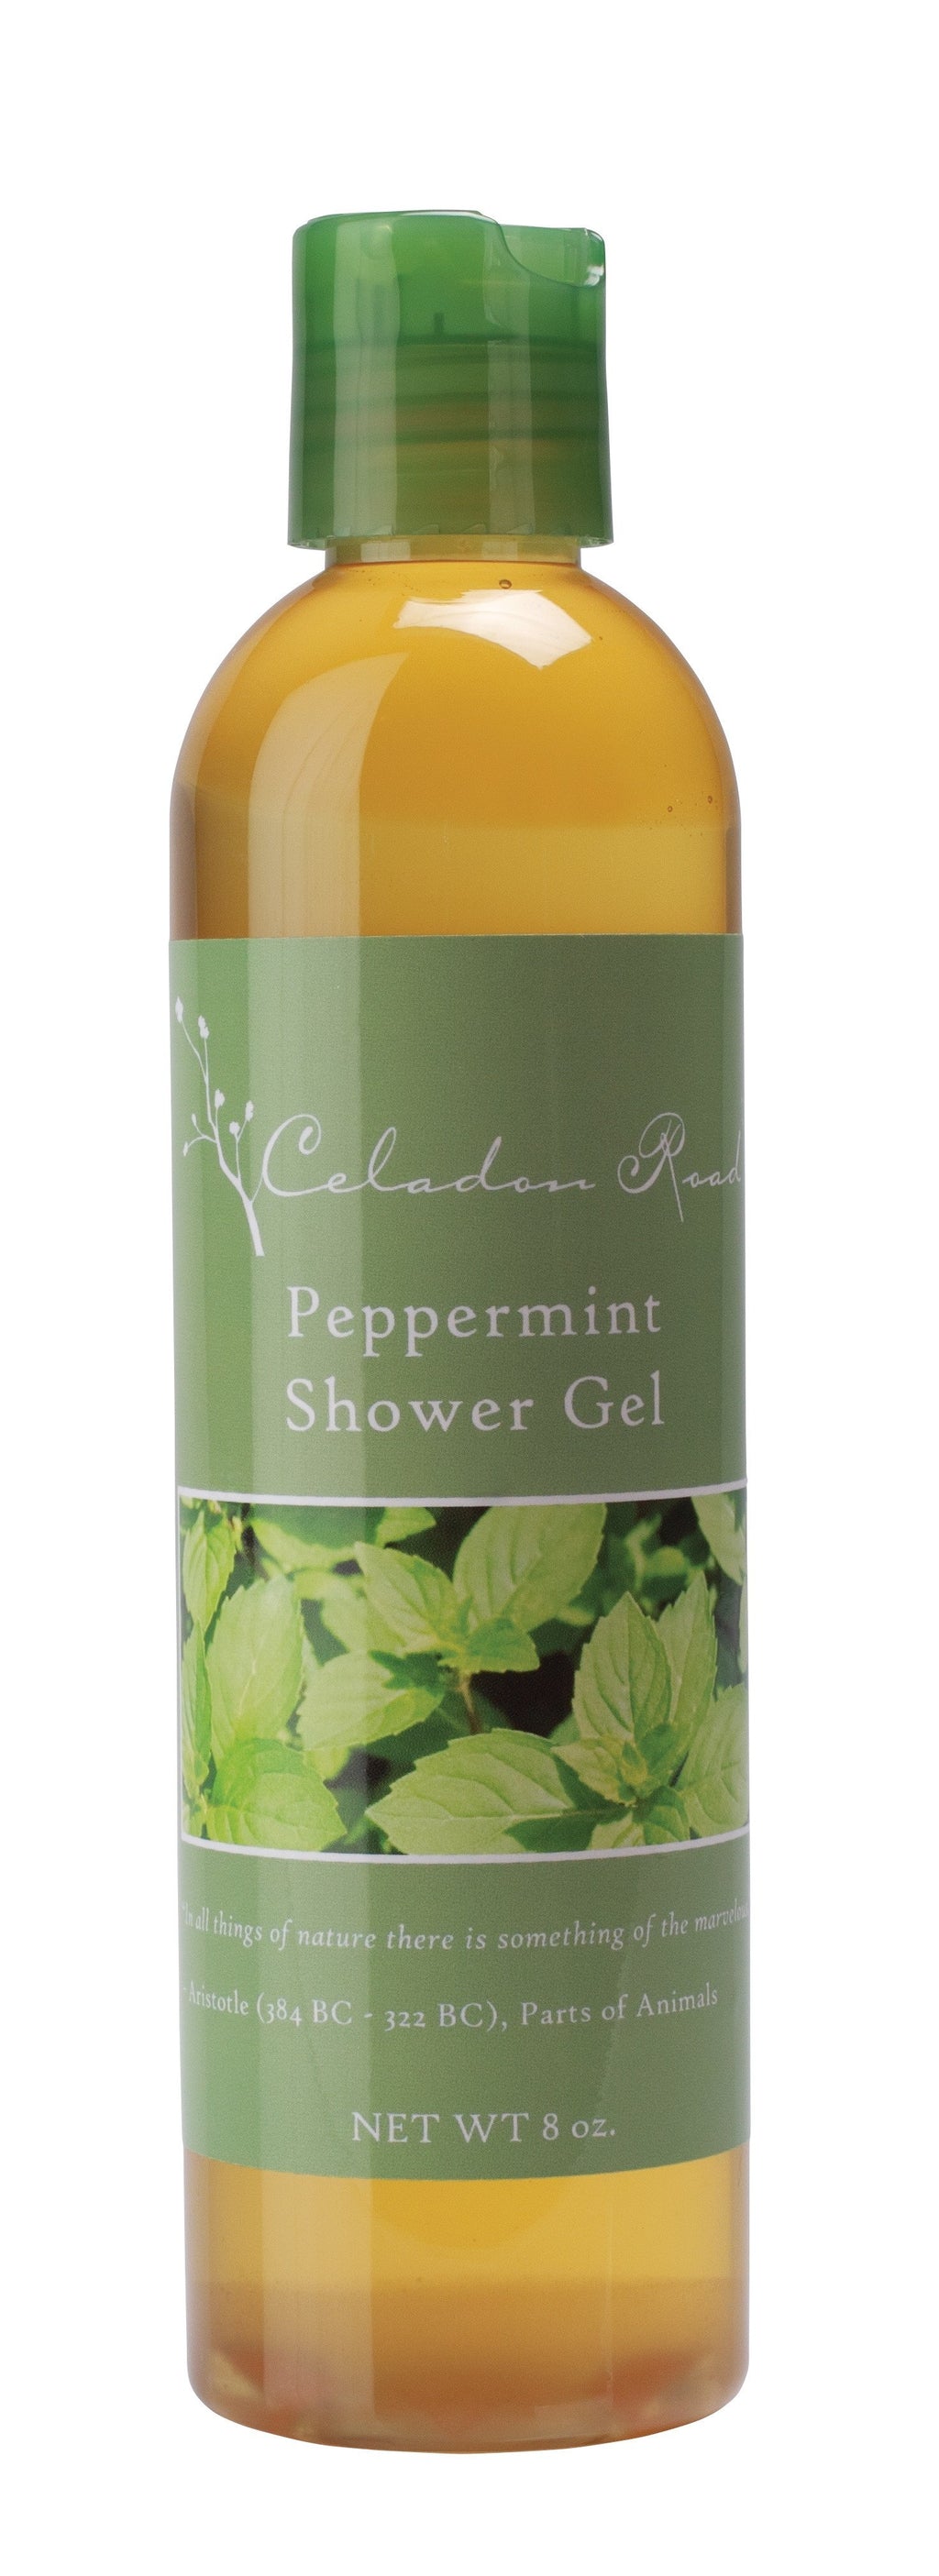 Peppermint Shower Gel- Celadon Road- www.celadonroad.com